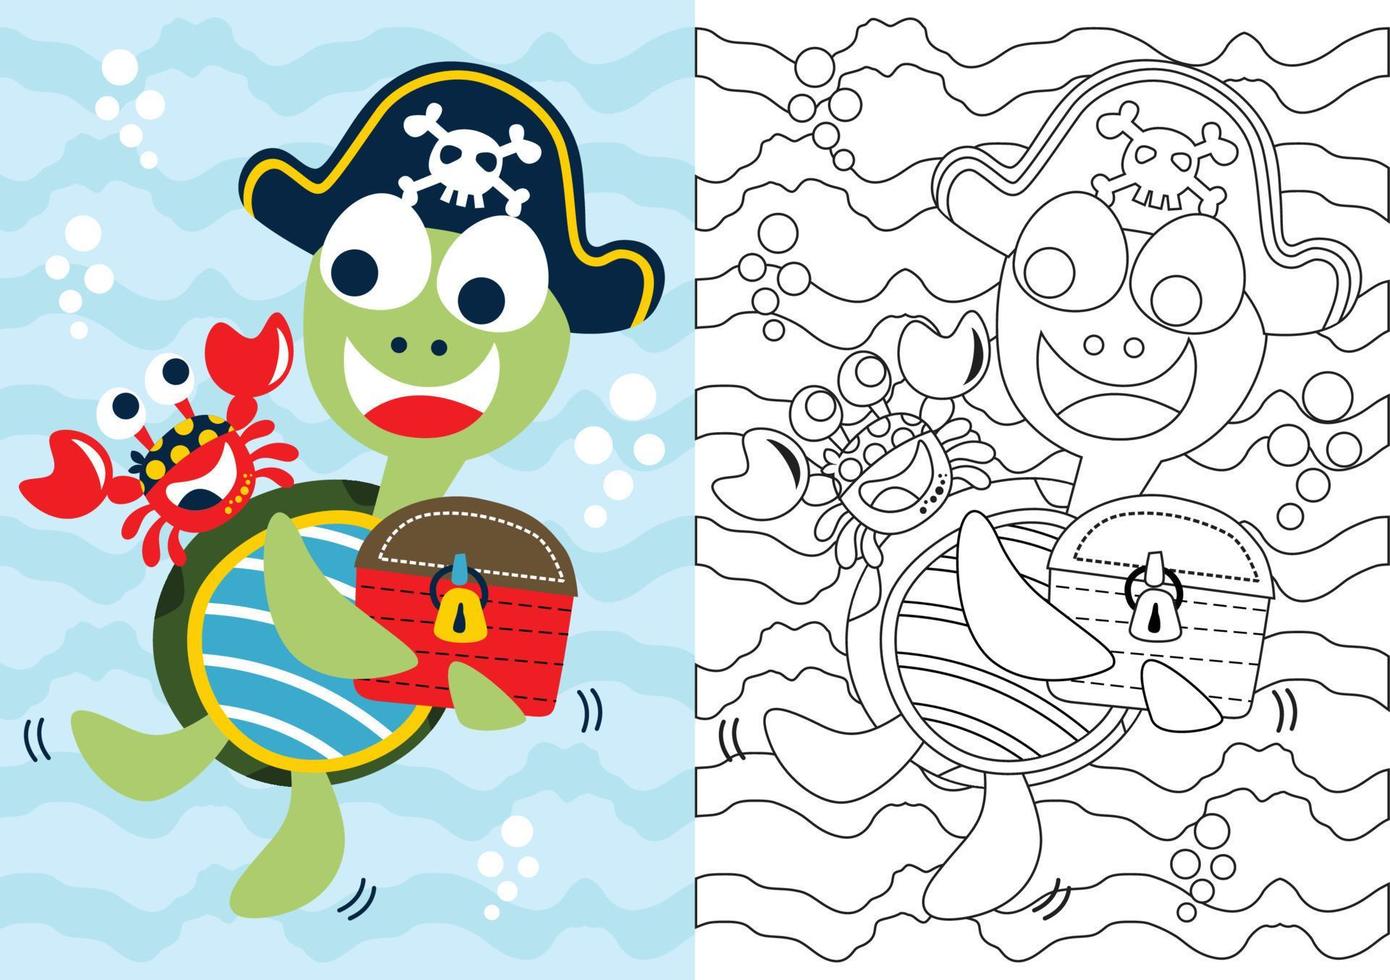 caricature de vecteur de crabe avec tortue portant une casquette de pirates tenant un coffre au trésor, un livre de coloriage ou une page